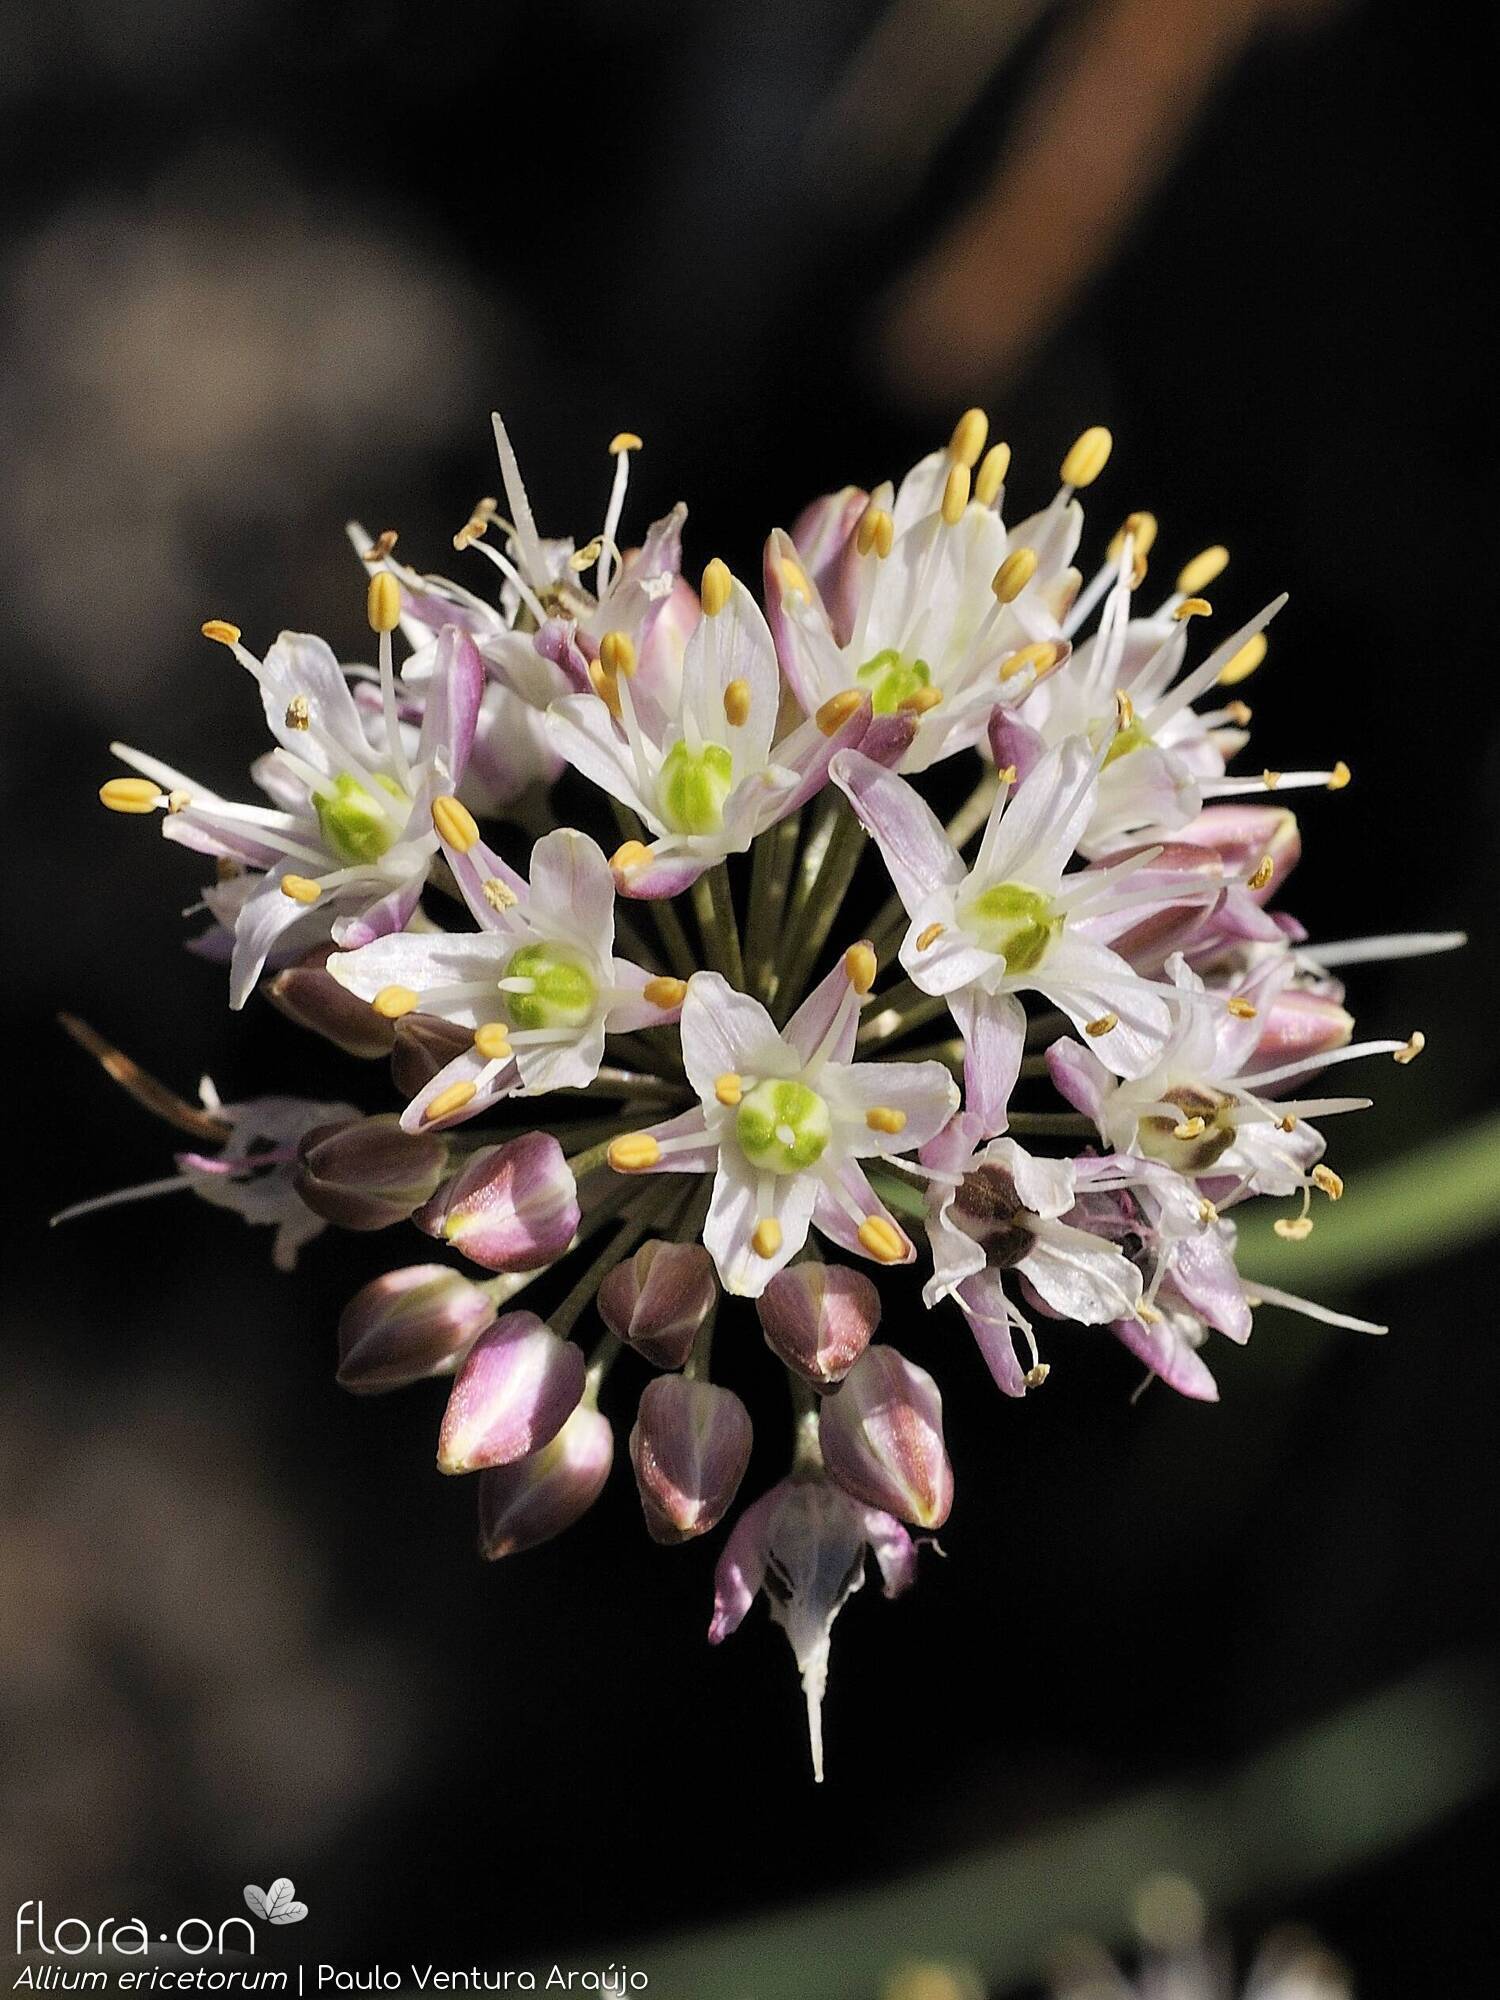 Allium ericetorum - Flor (geral) | Paulo Ventura Araújo; CC BY-NC 4.0